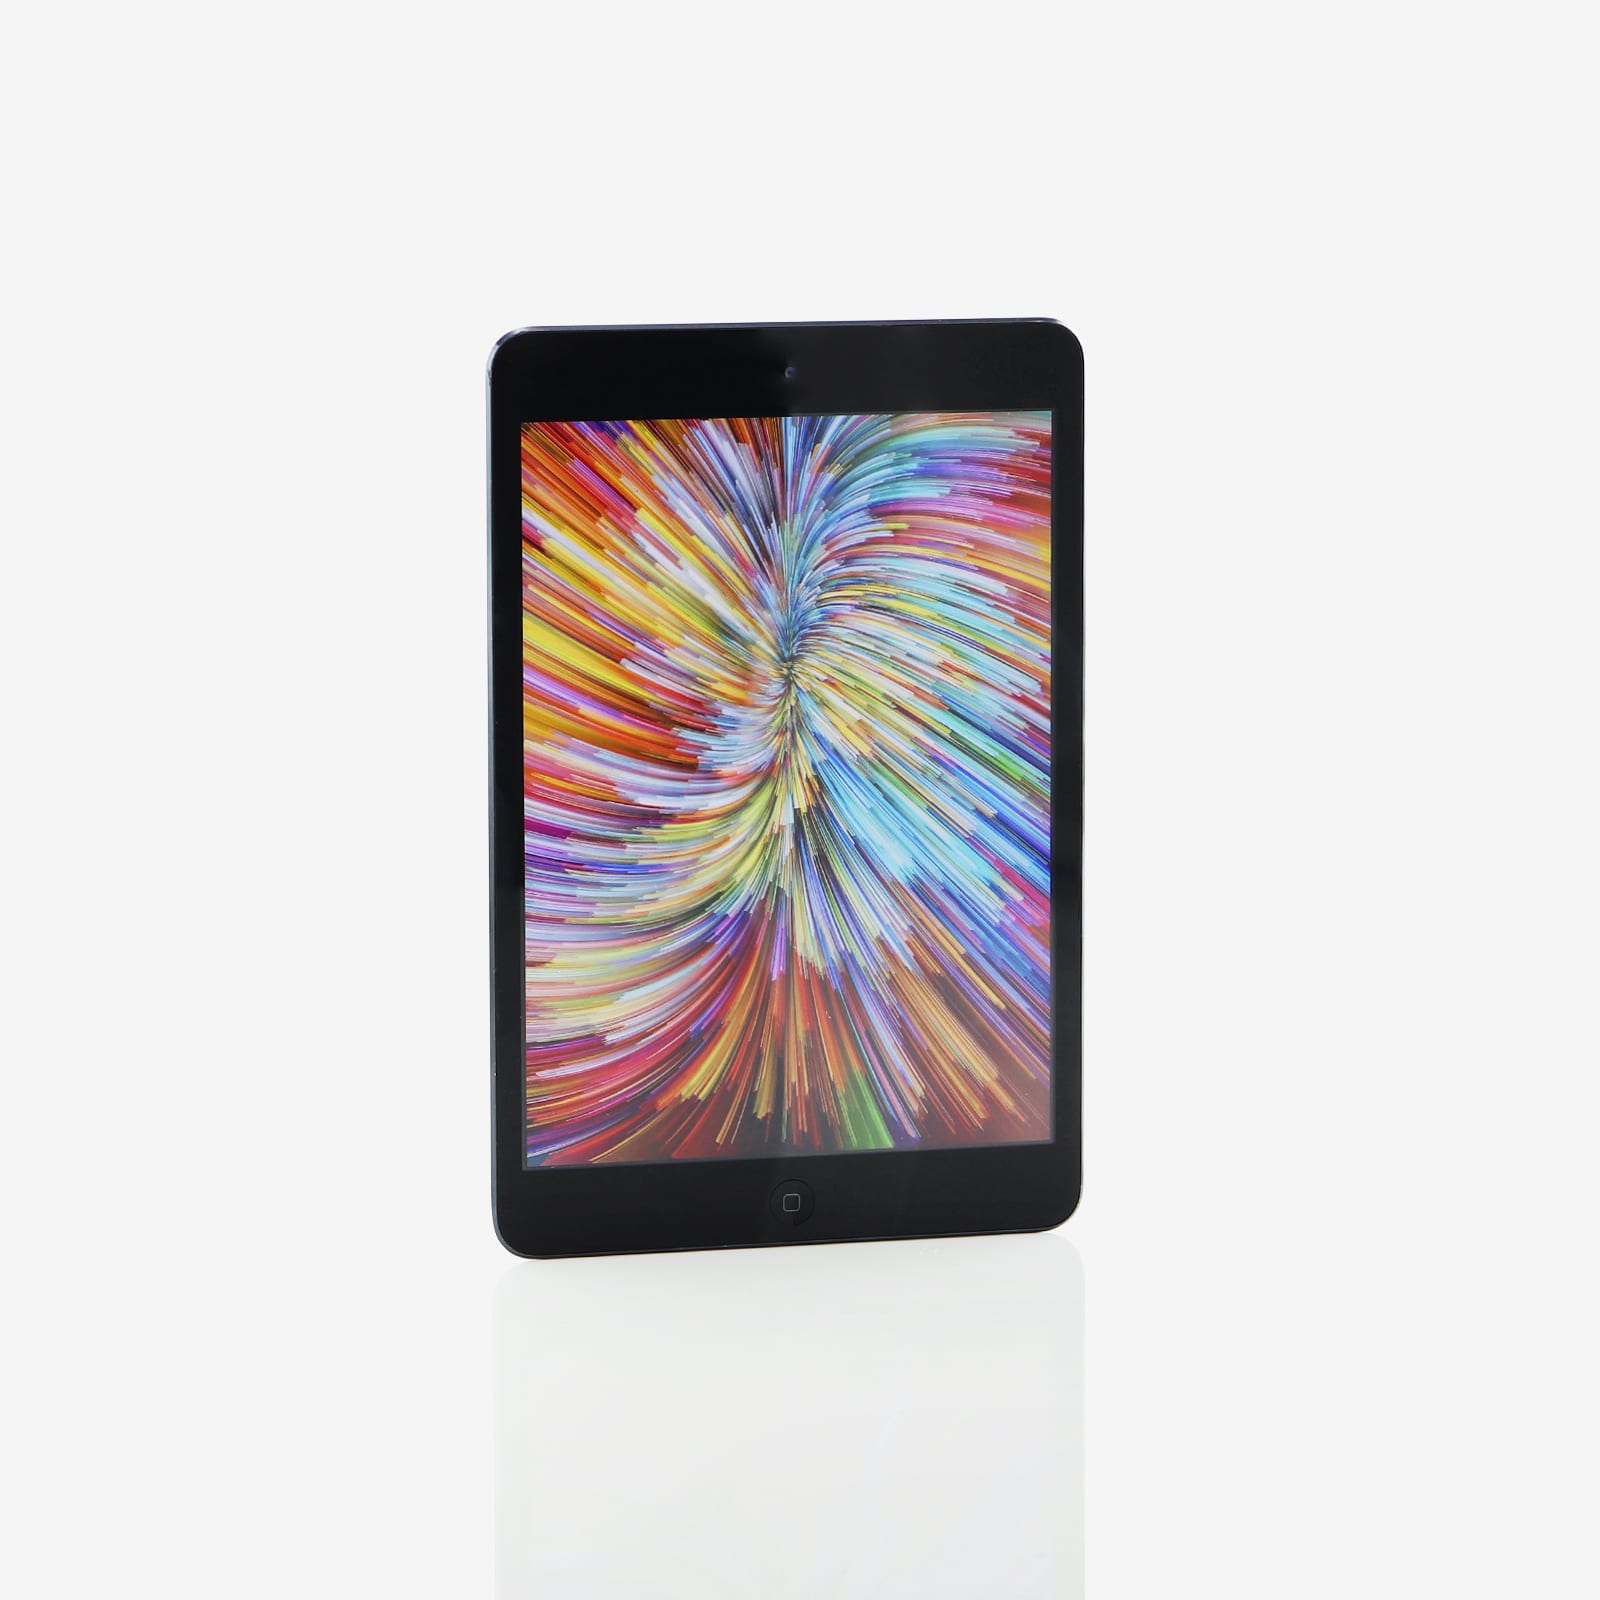 1 x iPad mini (Wi-Fi) Black